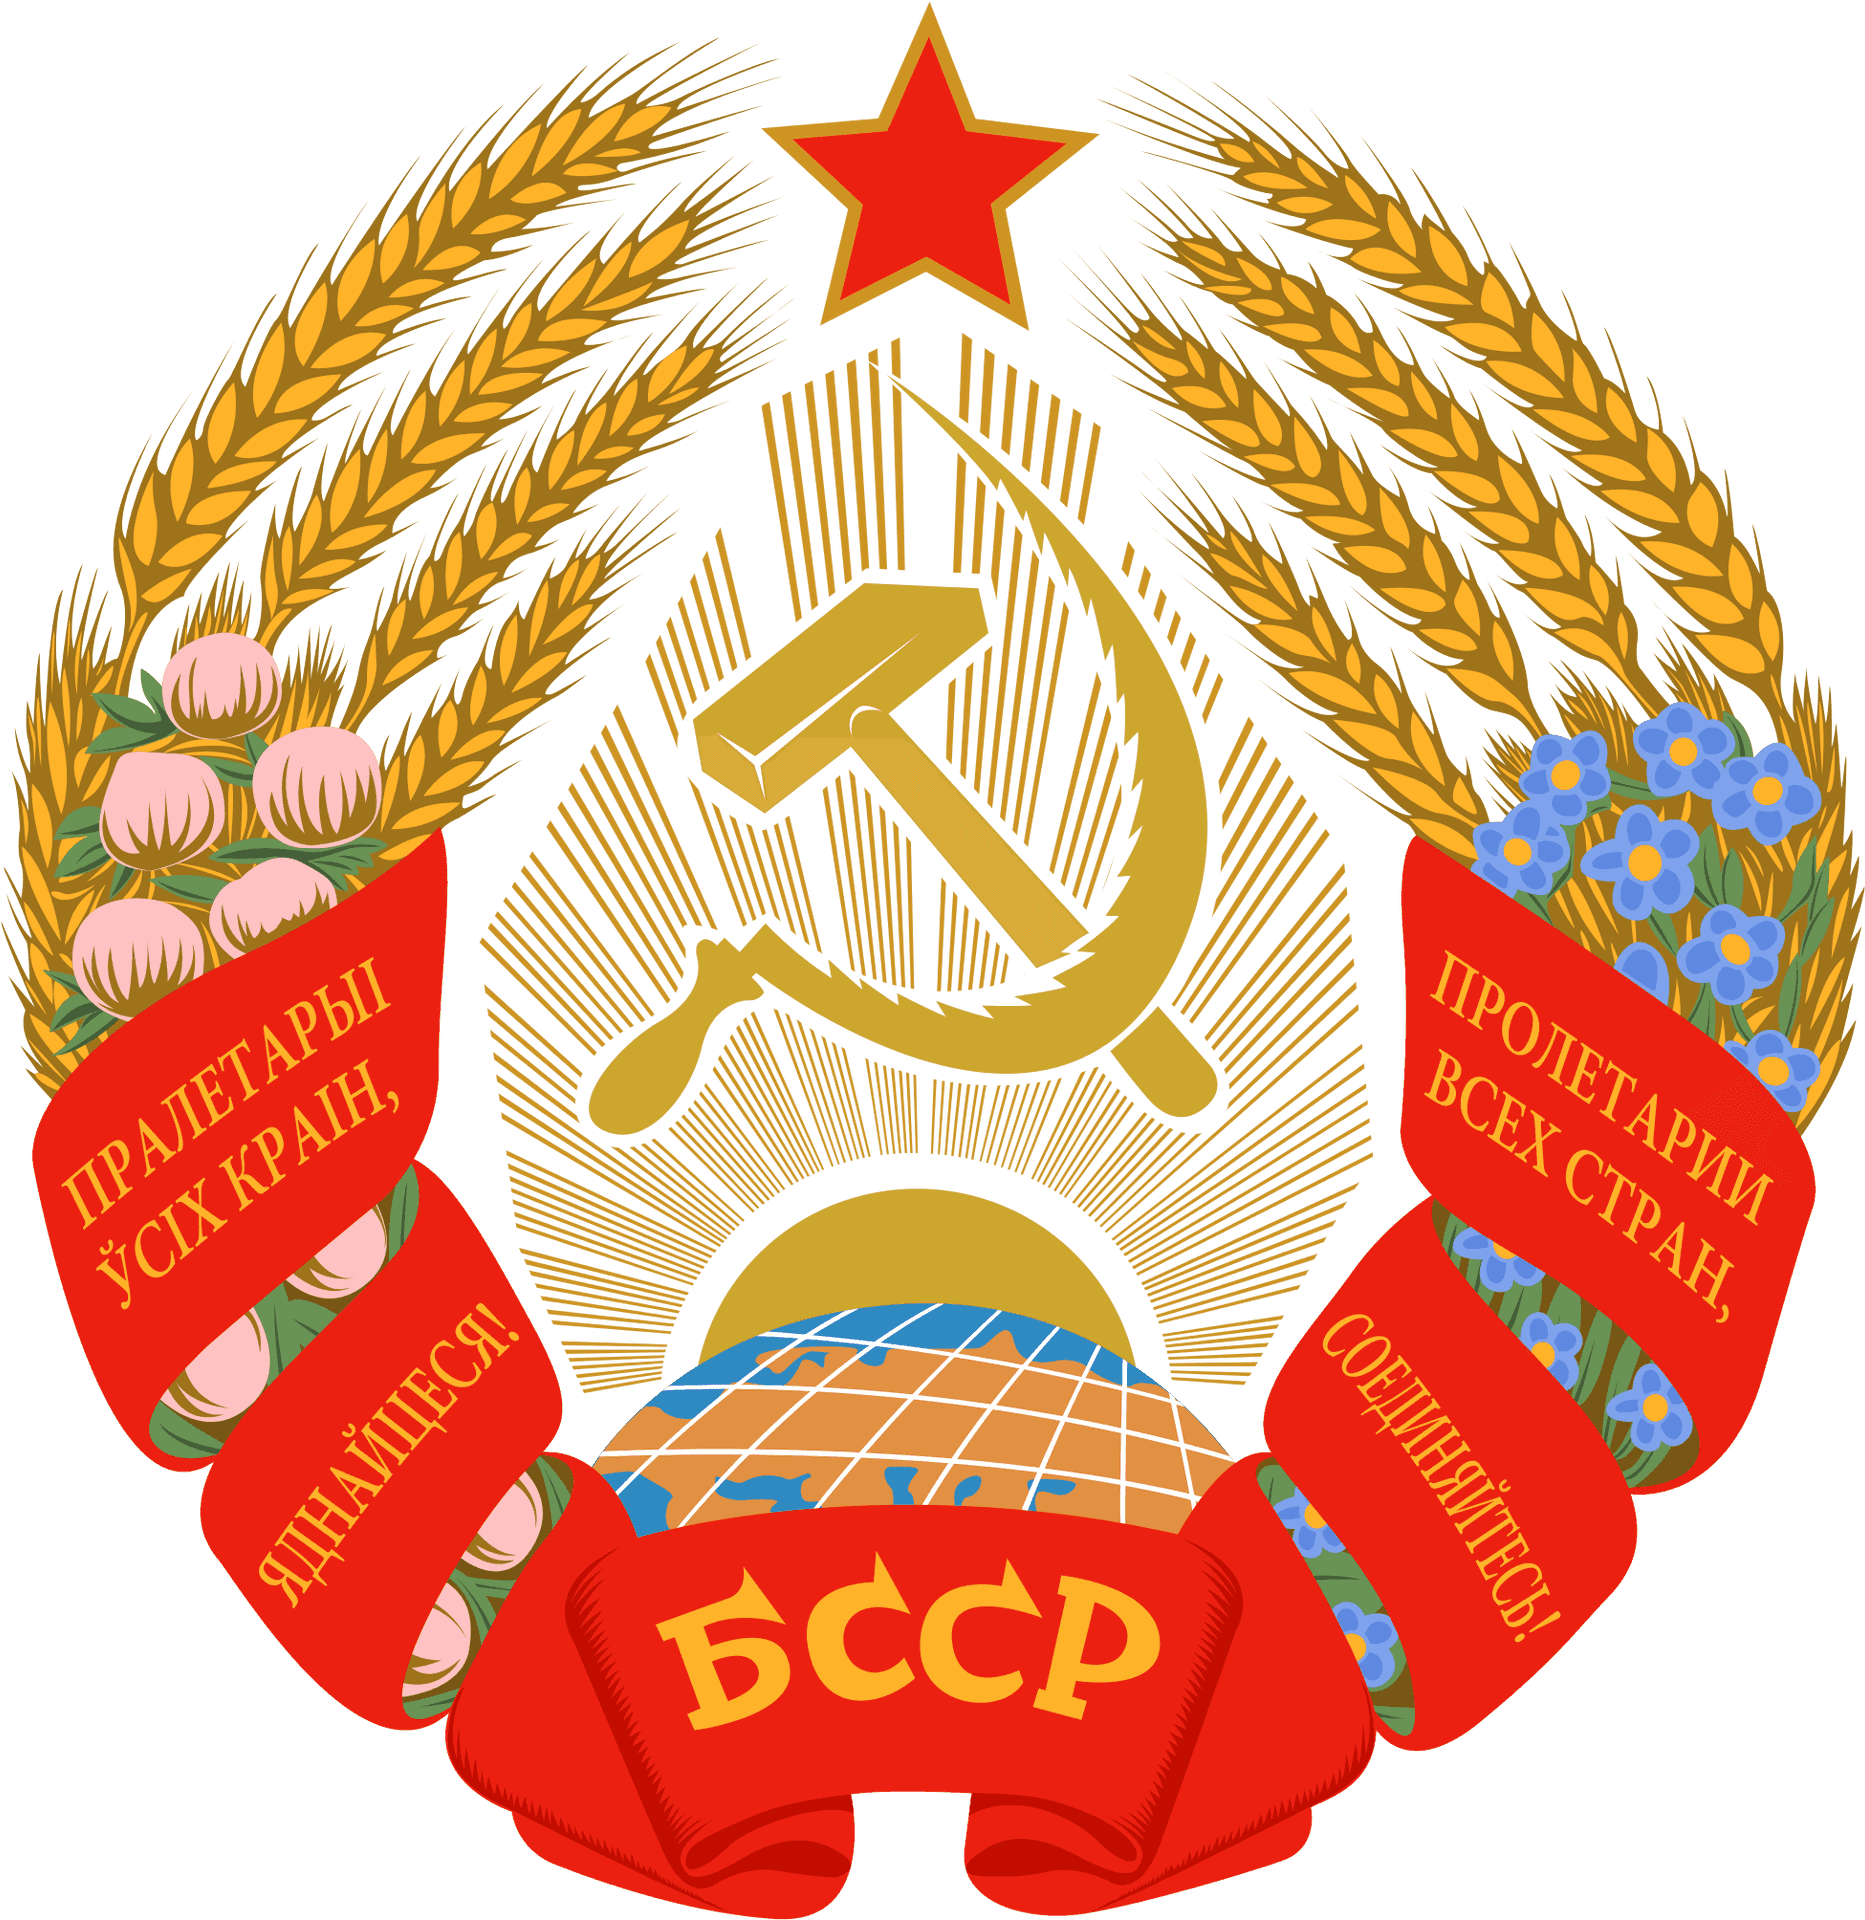 Soviet Belarus Emblem PNG